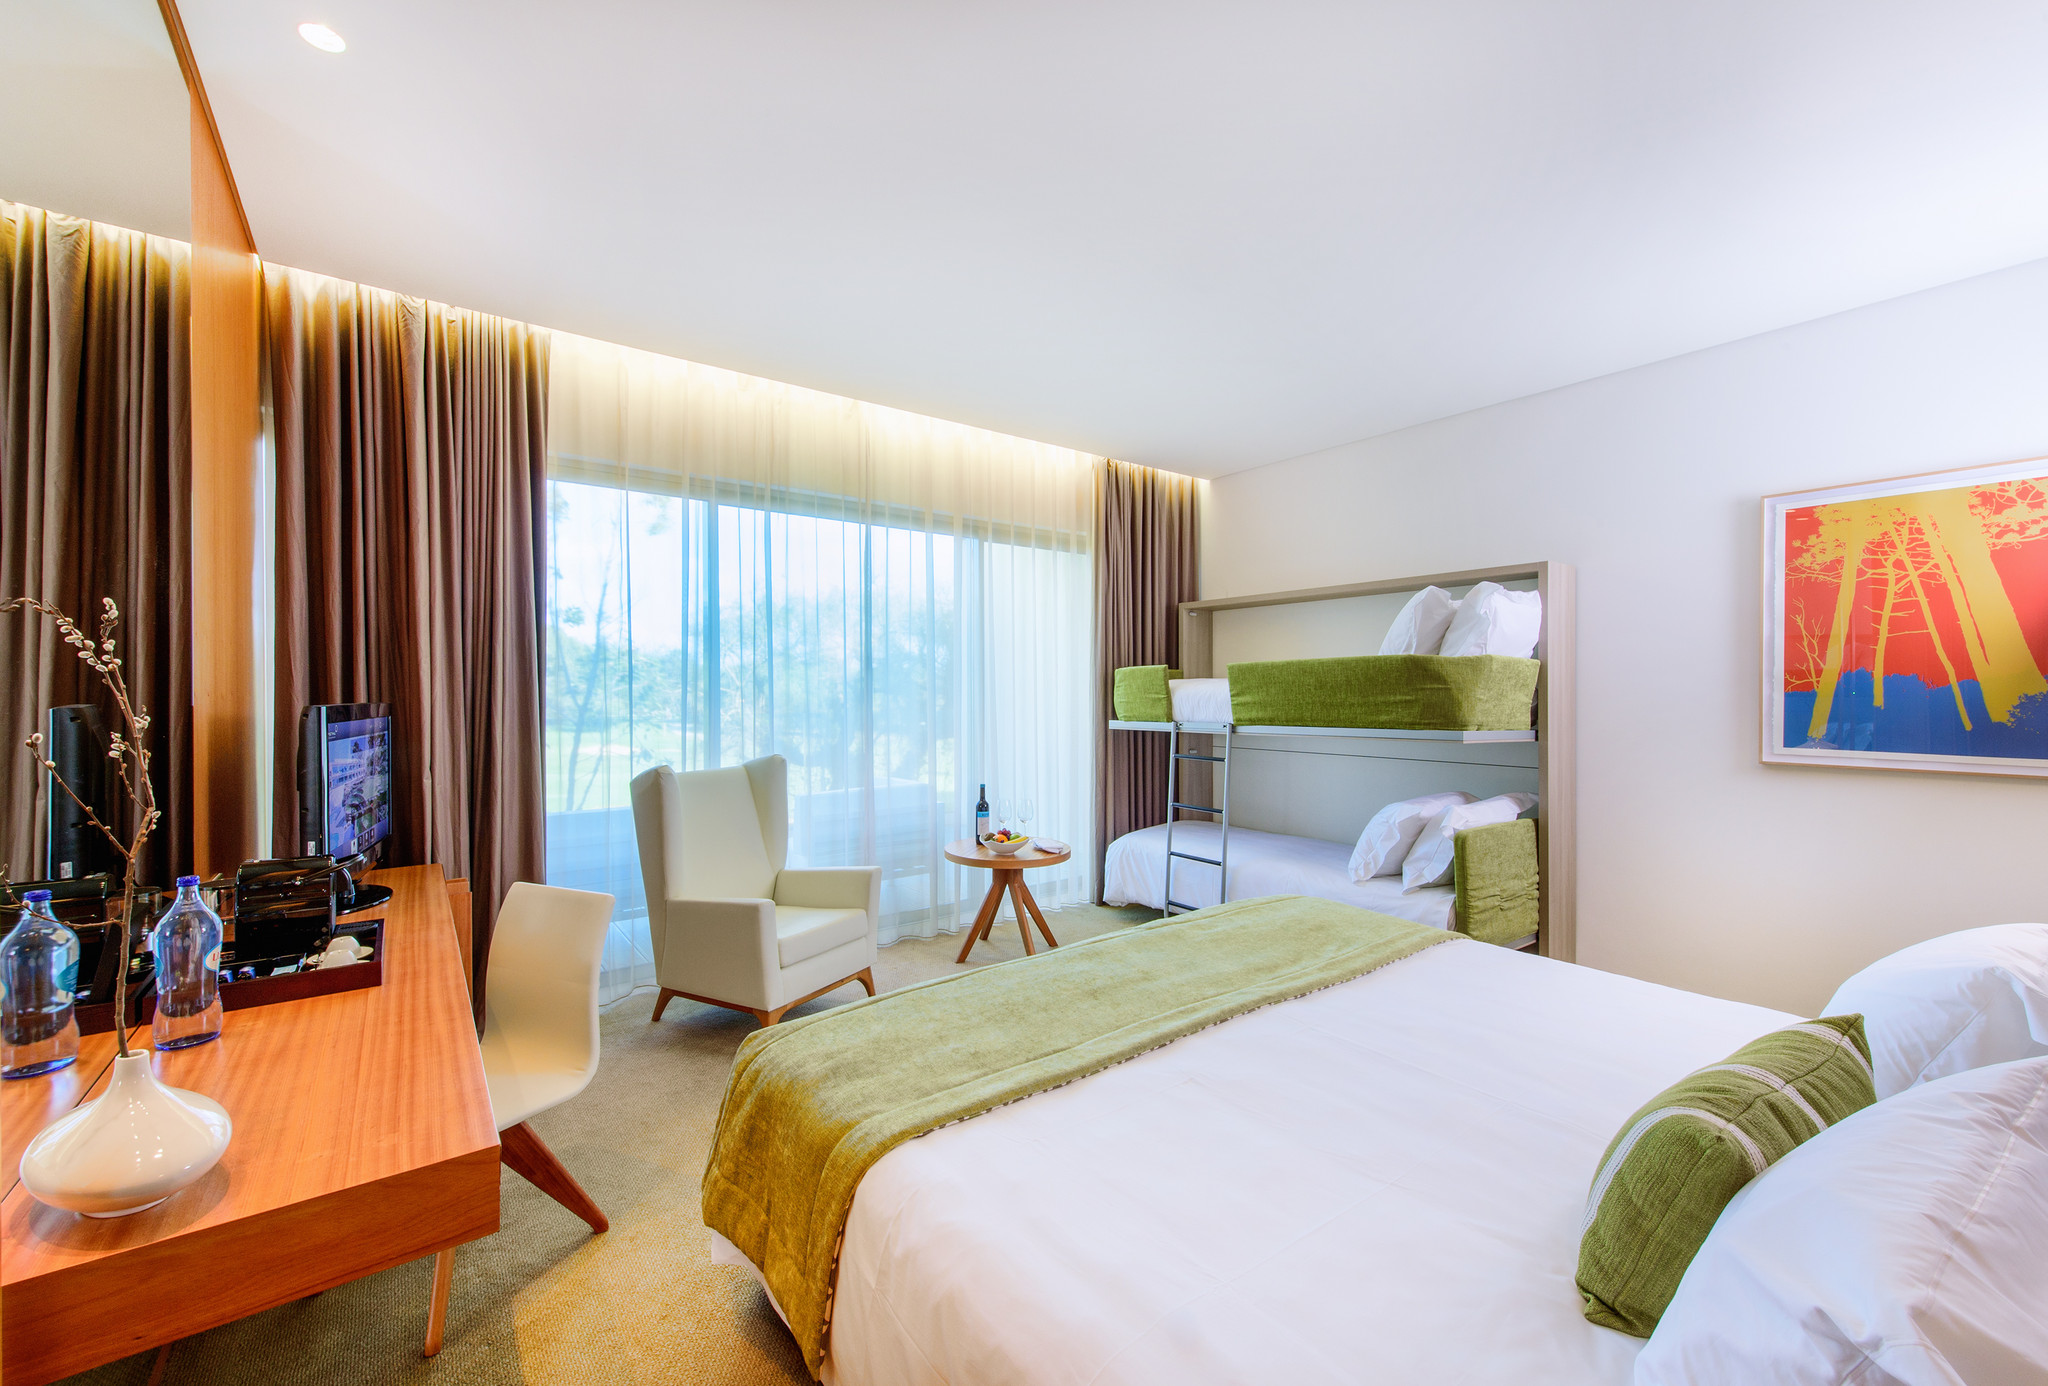 Martinhal Cascais Hotel Room with bunkbed.jpg